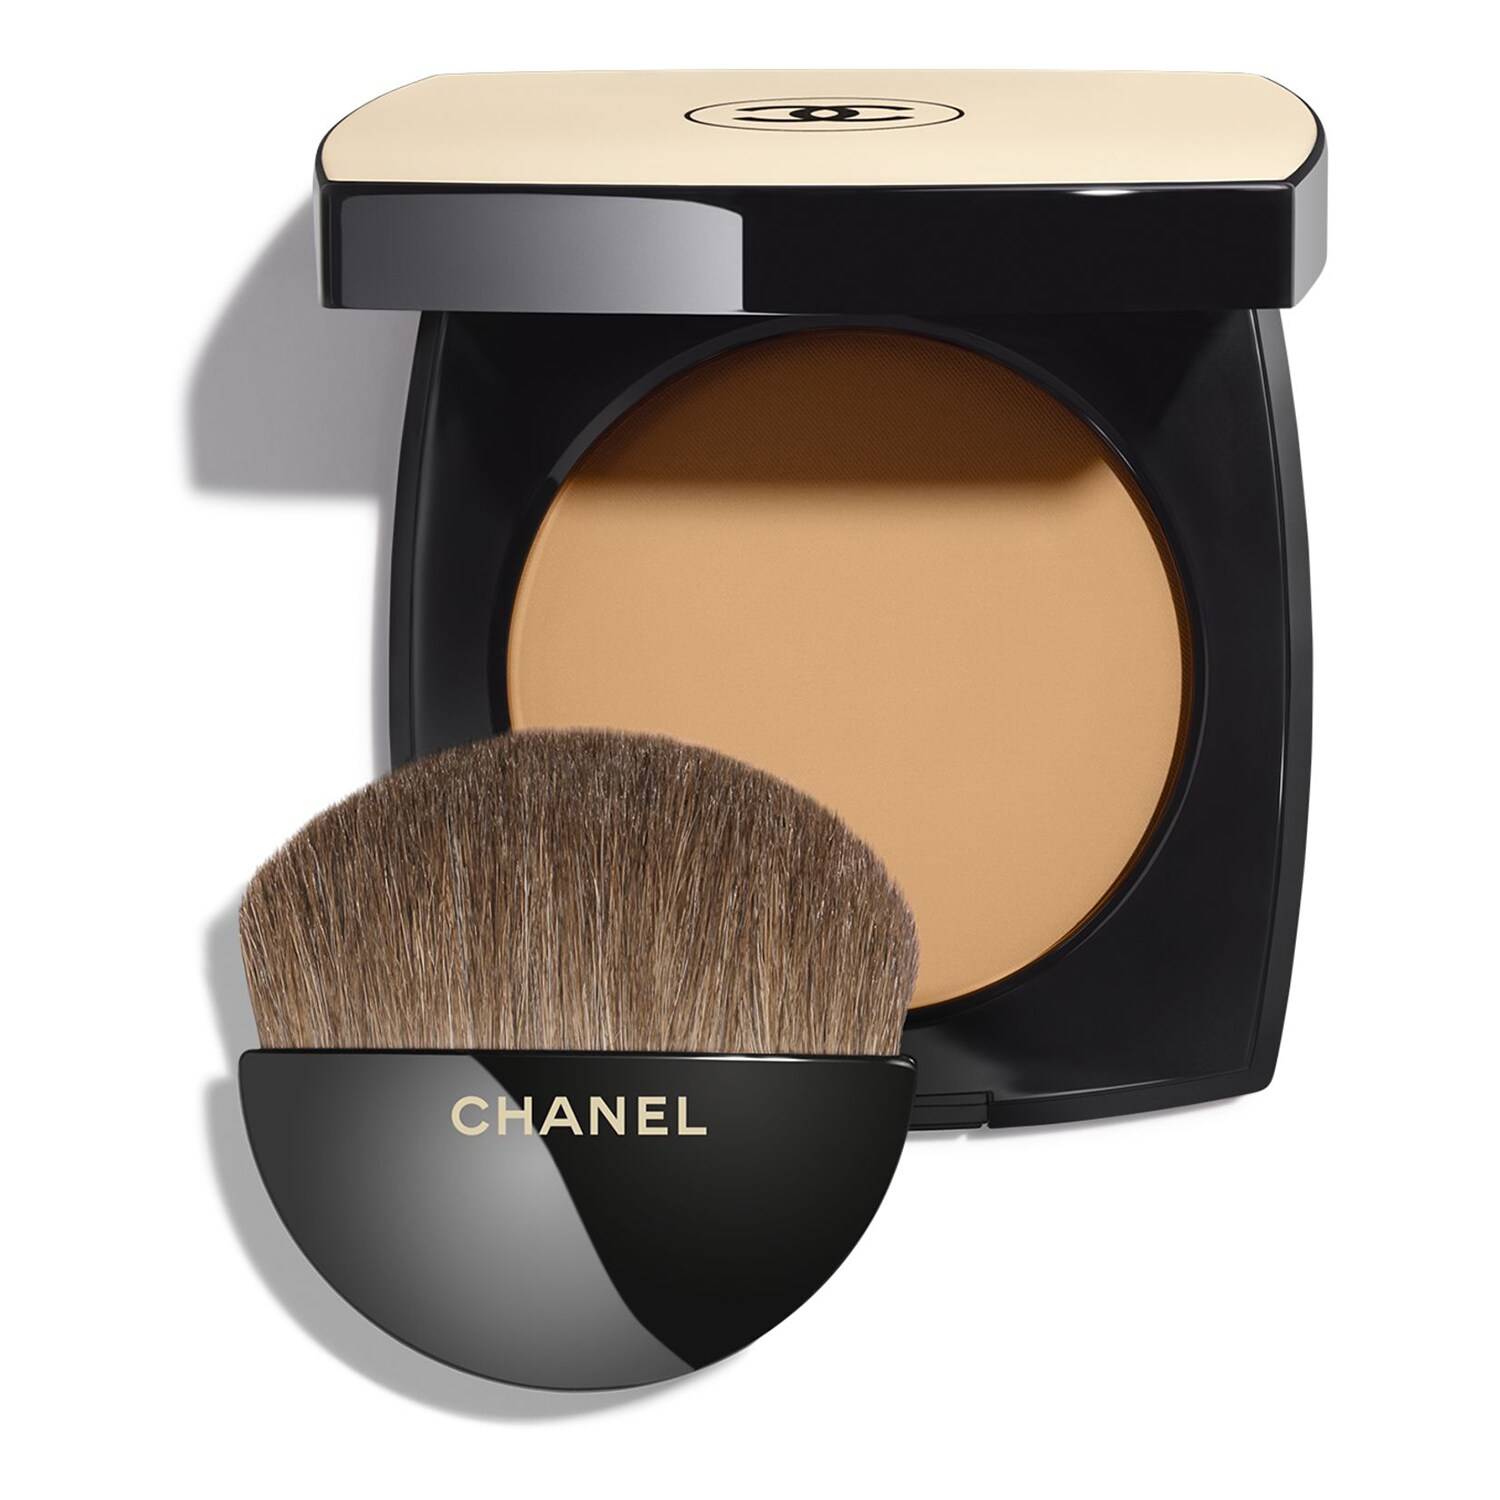 Chanel Les Beiges Healthy Glow Powder 12G B80